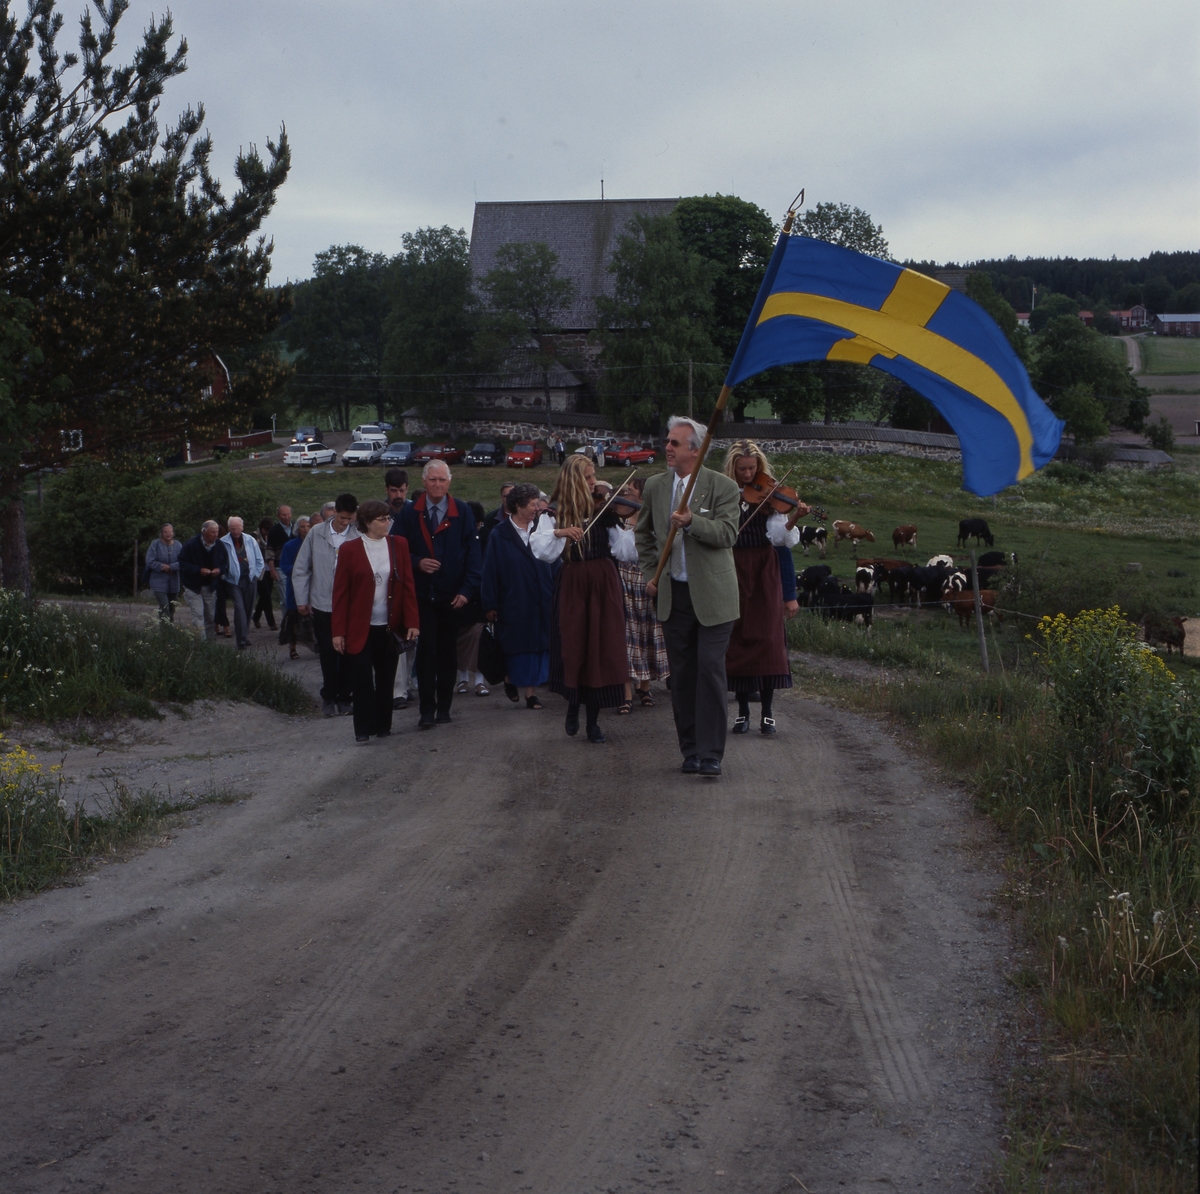 Kyrkvandring i Trönö, söndagen 17 juni 2001. Främst i ledet går en man med fana och efter honom går "Spelsystrarna" med sina fioler. Därefter går resten av deltagarna.